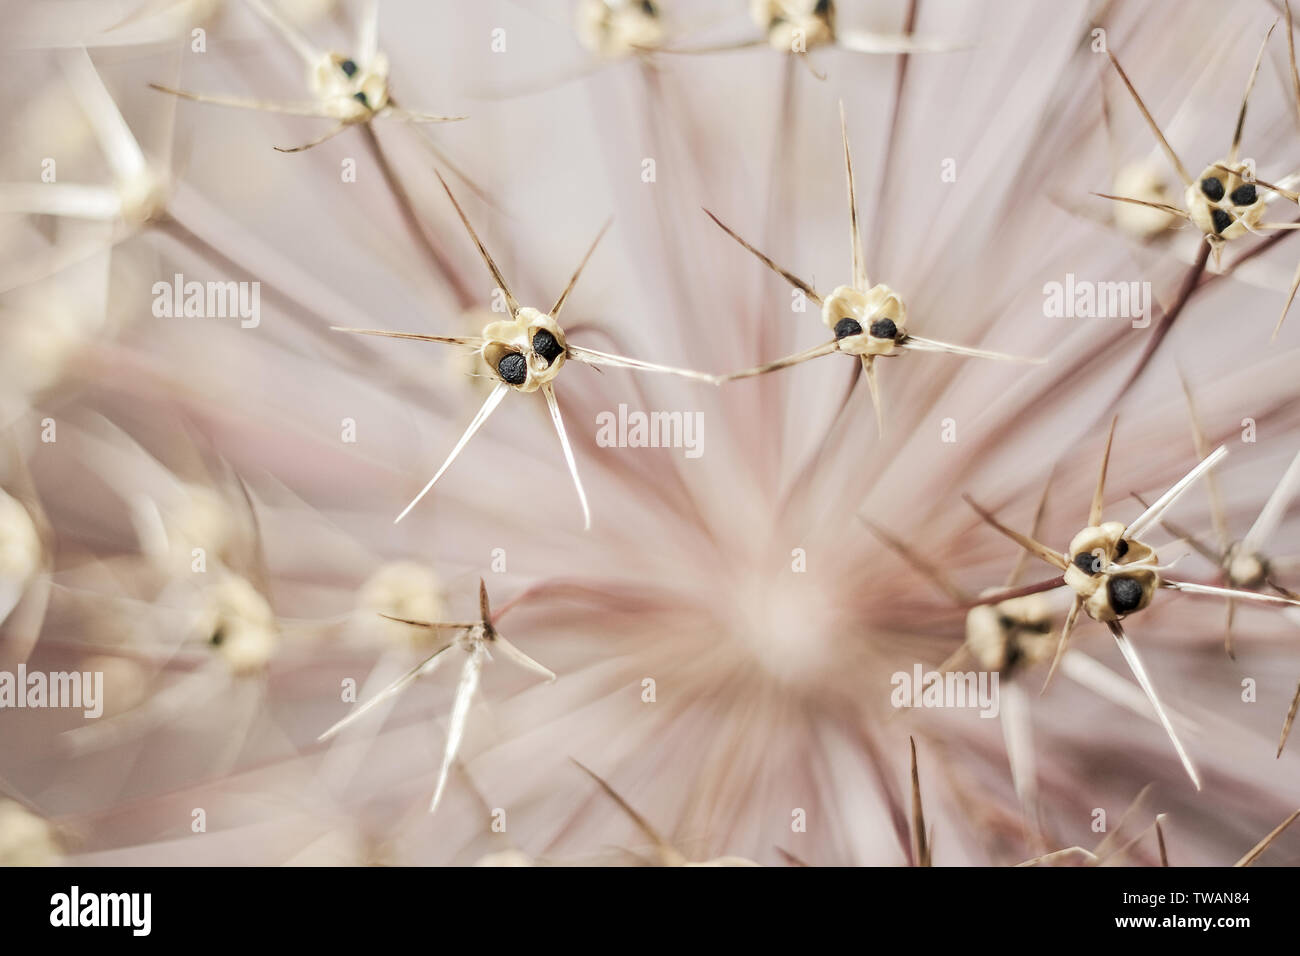 Eine getrocknete Allium Blume Makroaufnahme. Stockfoto